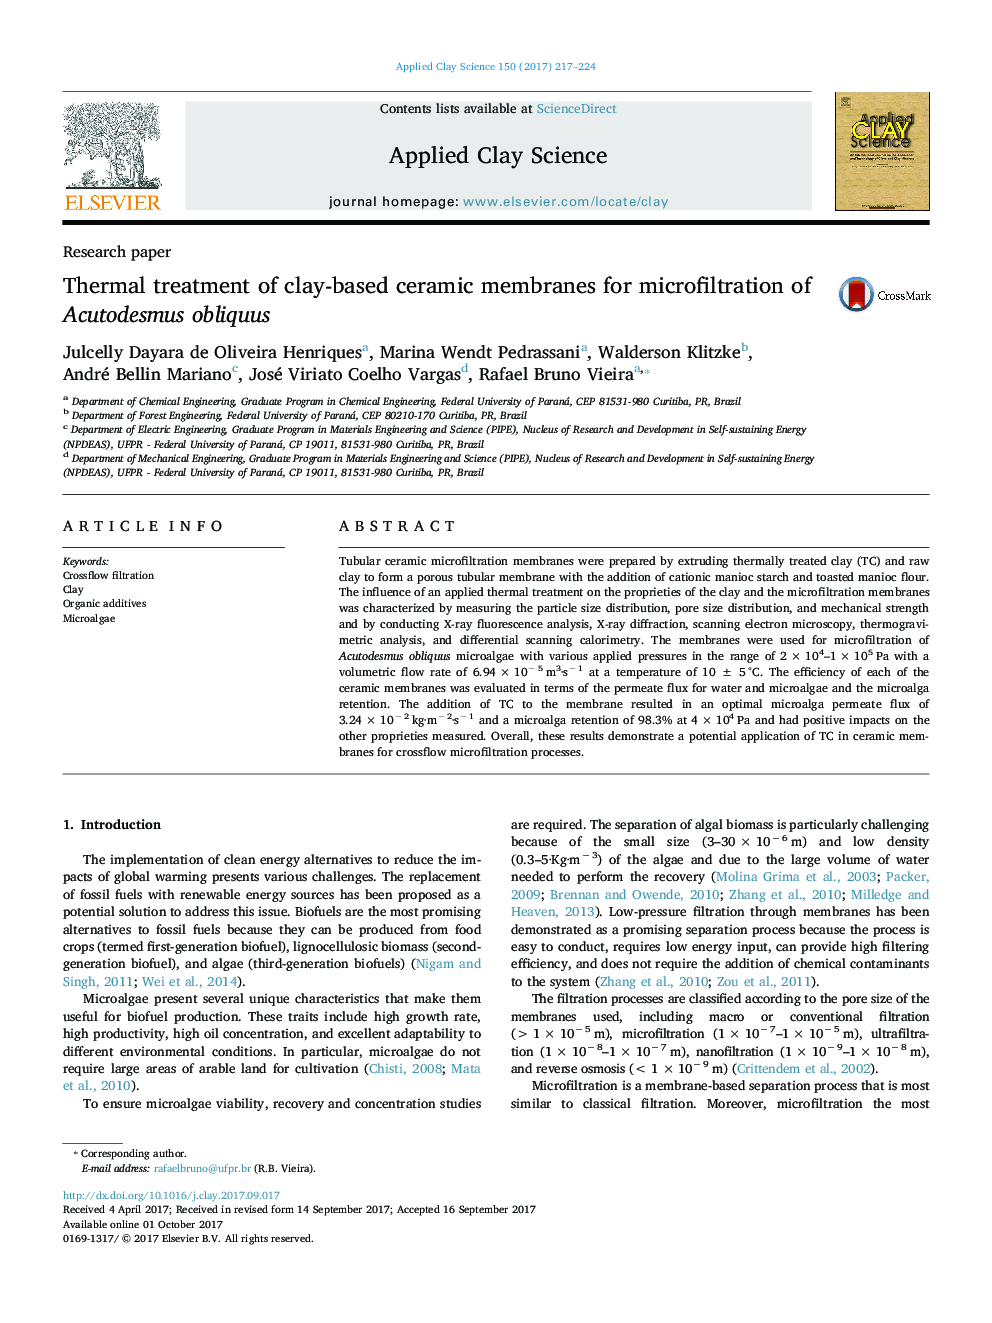 مقاله پژوهشی استفاده از تراشه های غشای سرامیکی بر پایه رس در میکرو فیلتر کردن Acutodesmus obliquus